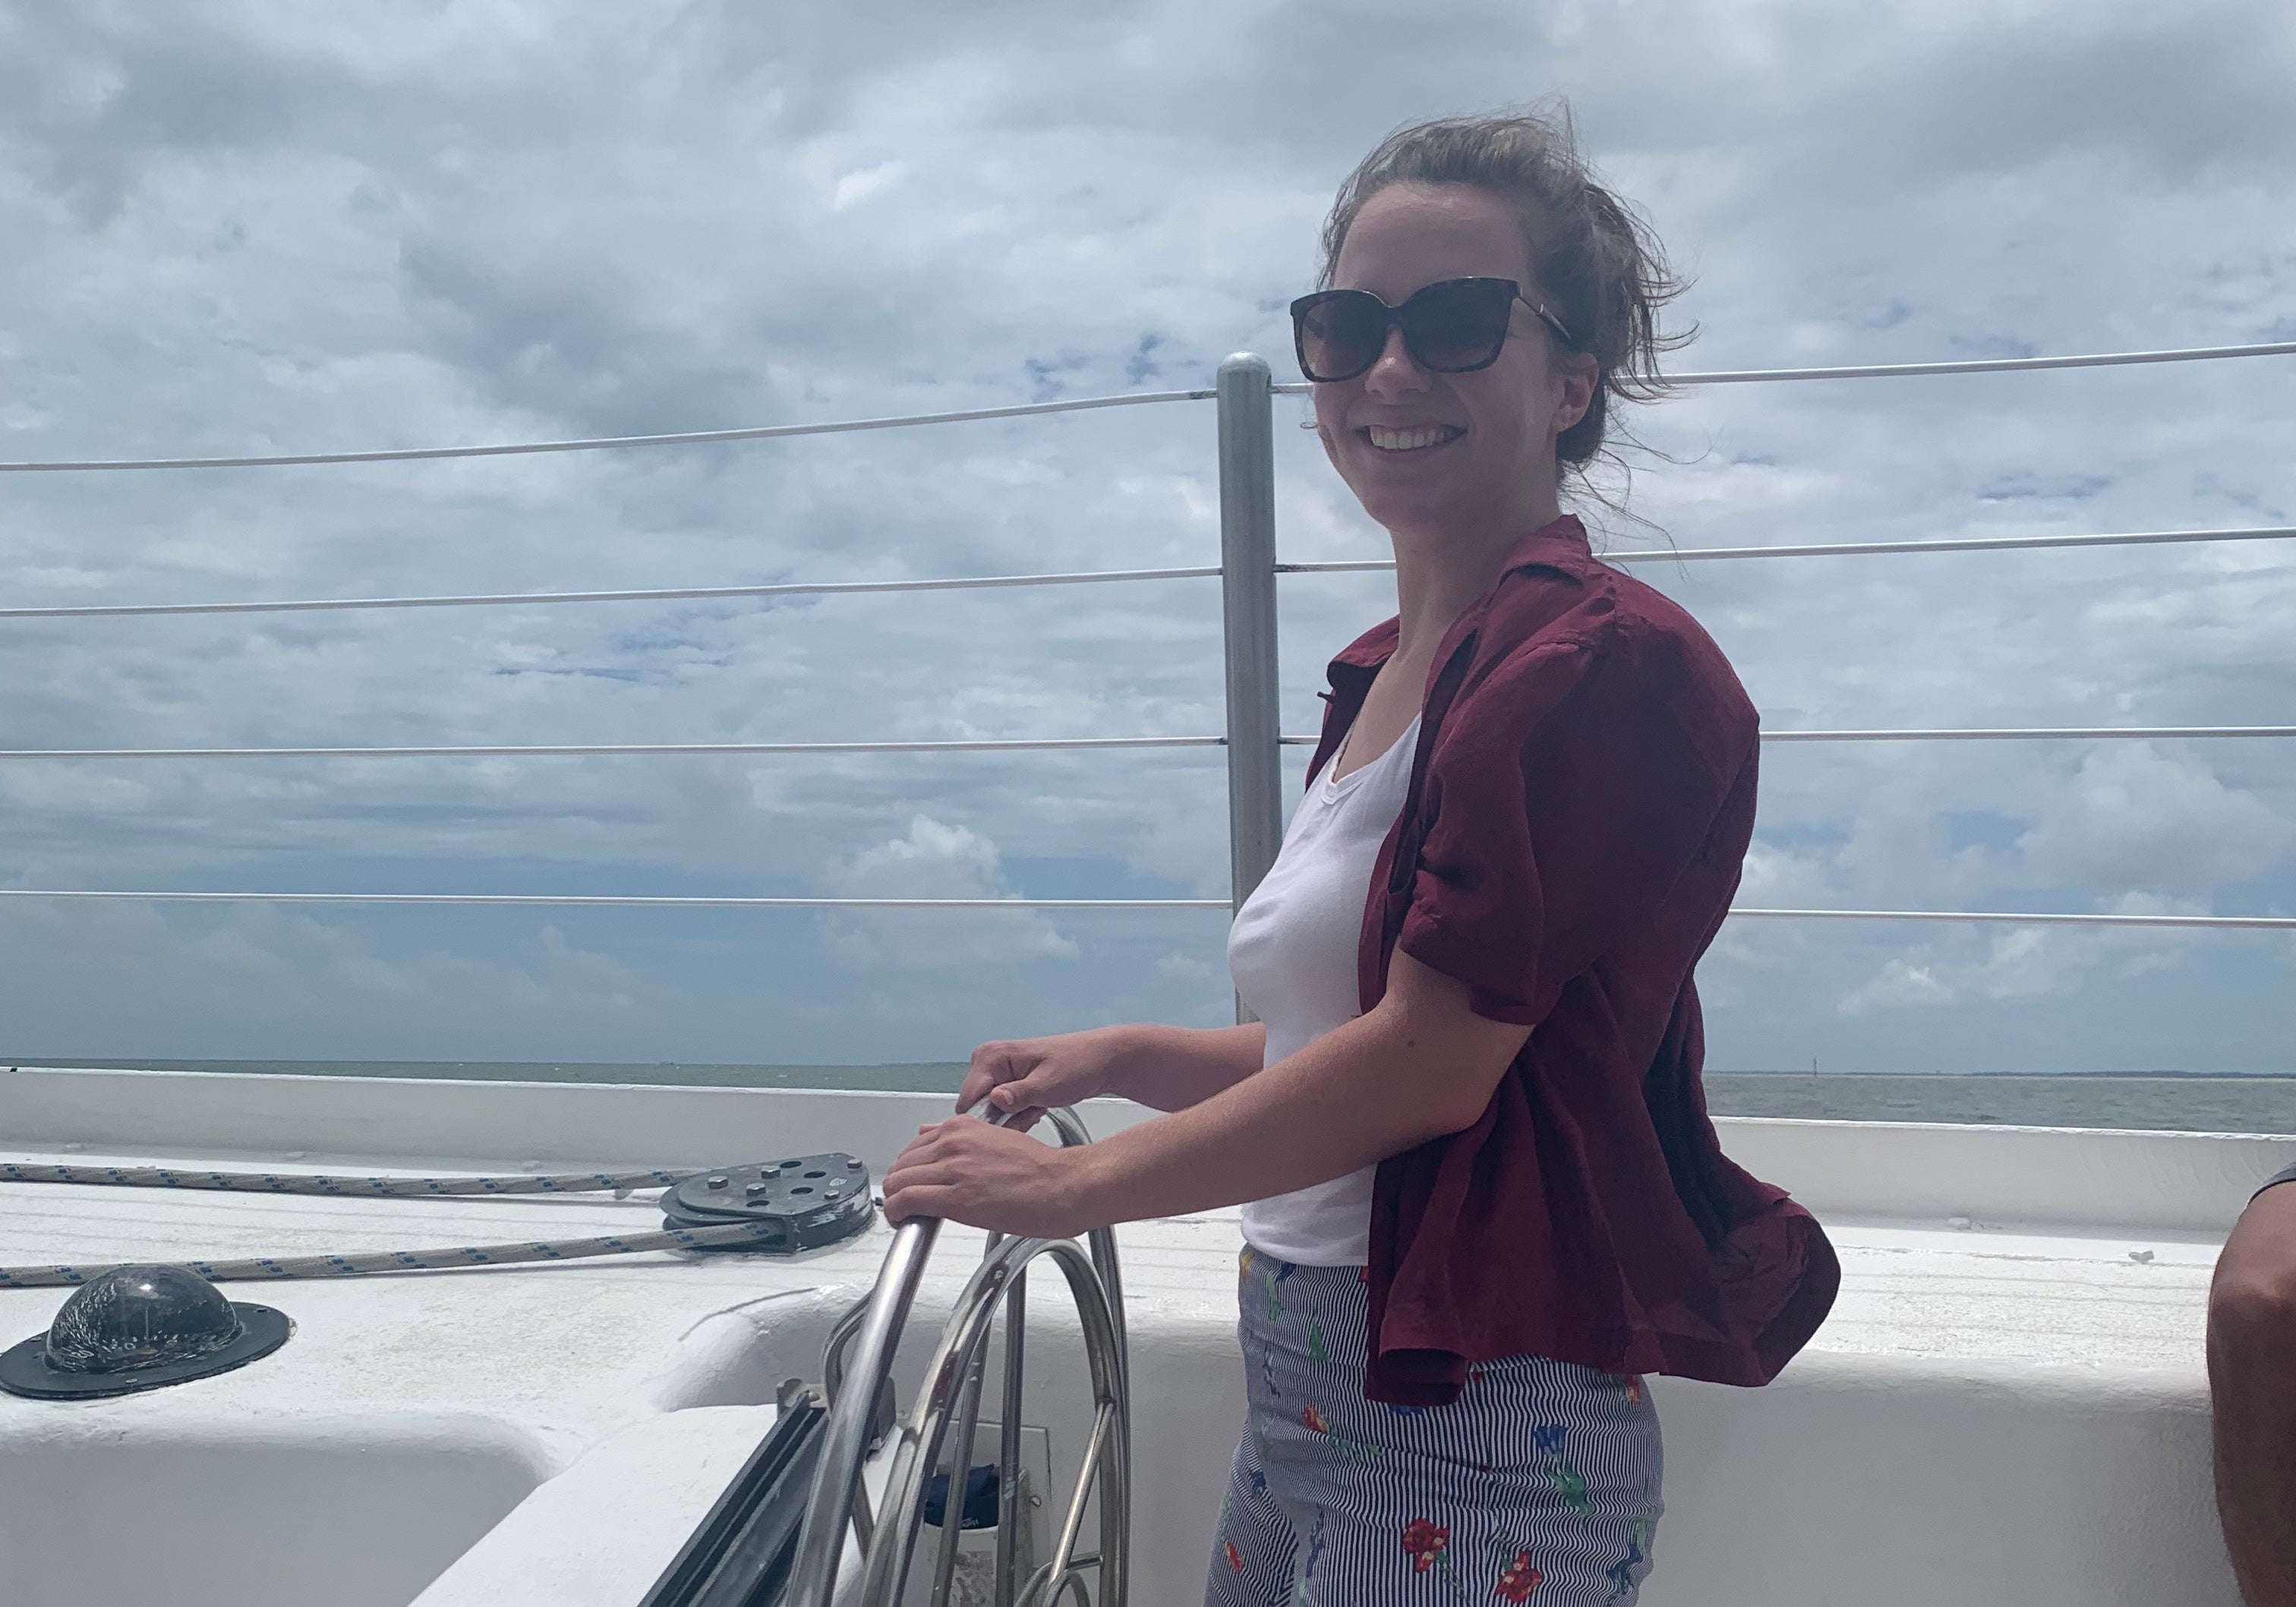 Rachel on a boat